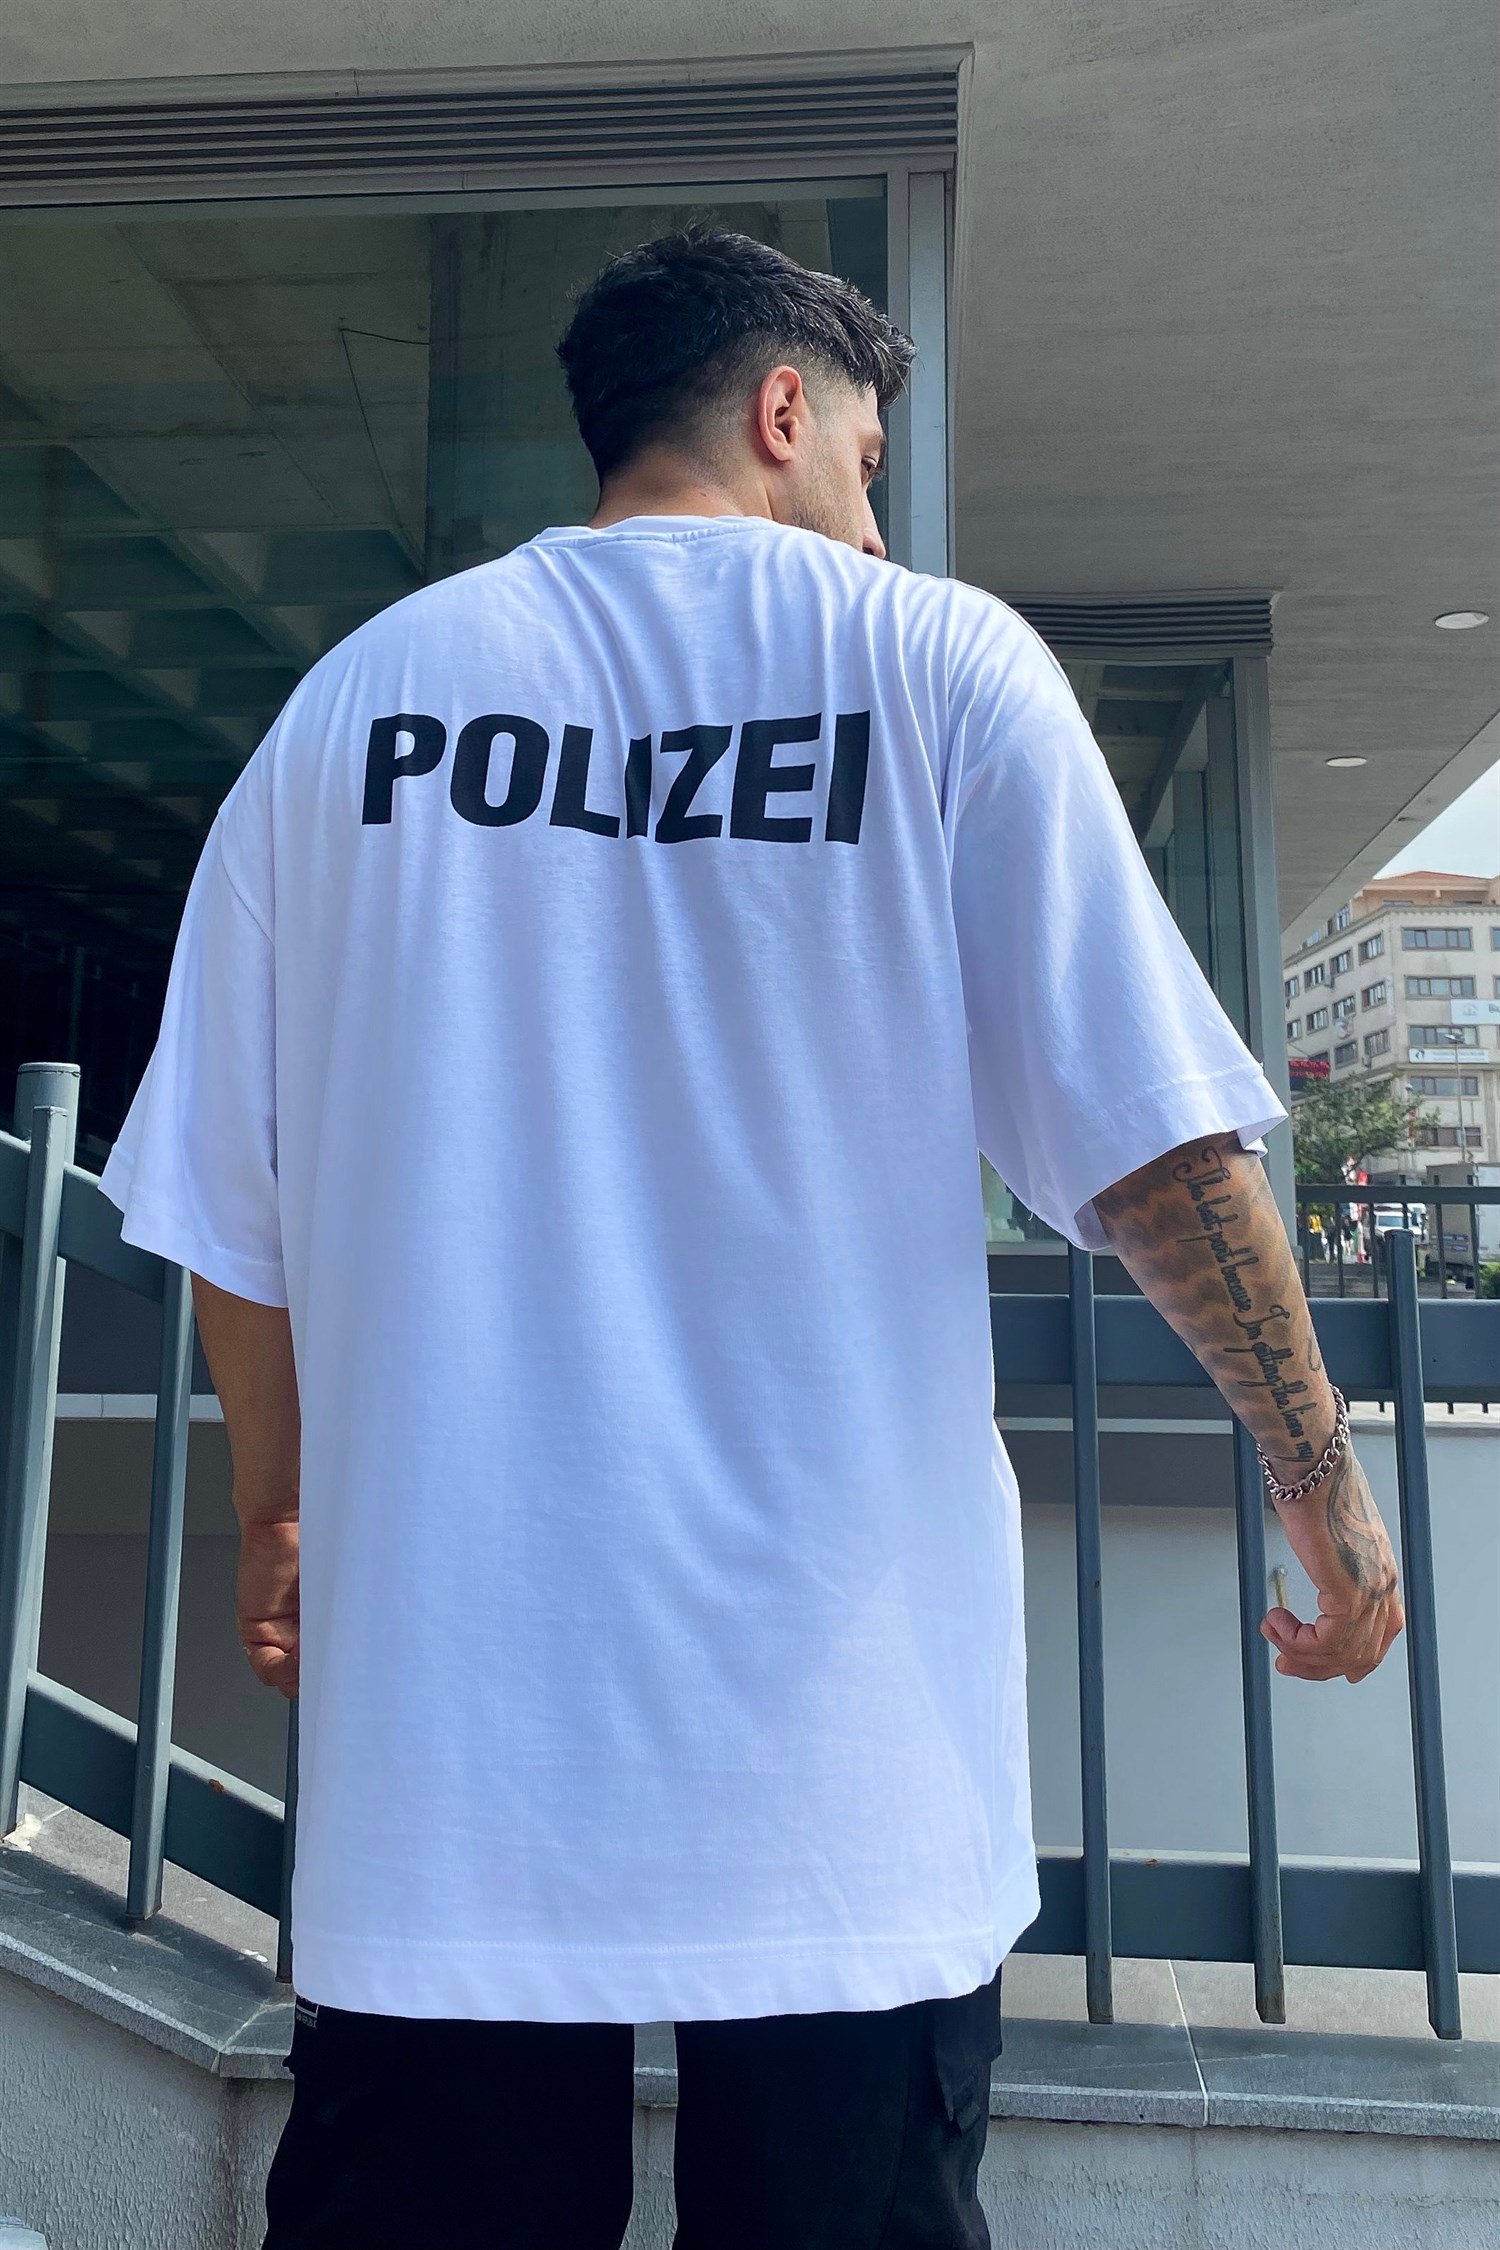 Polizei beyaz tshirt